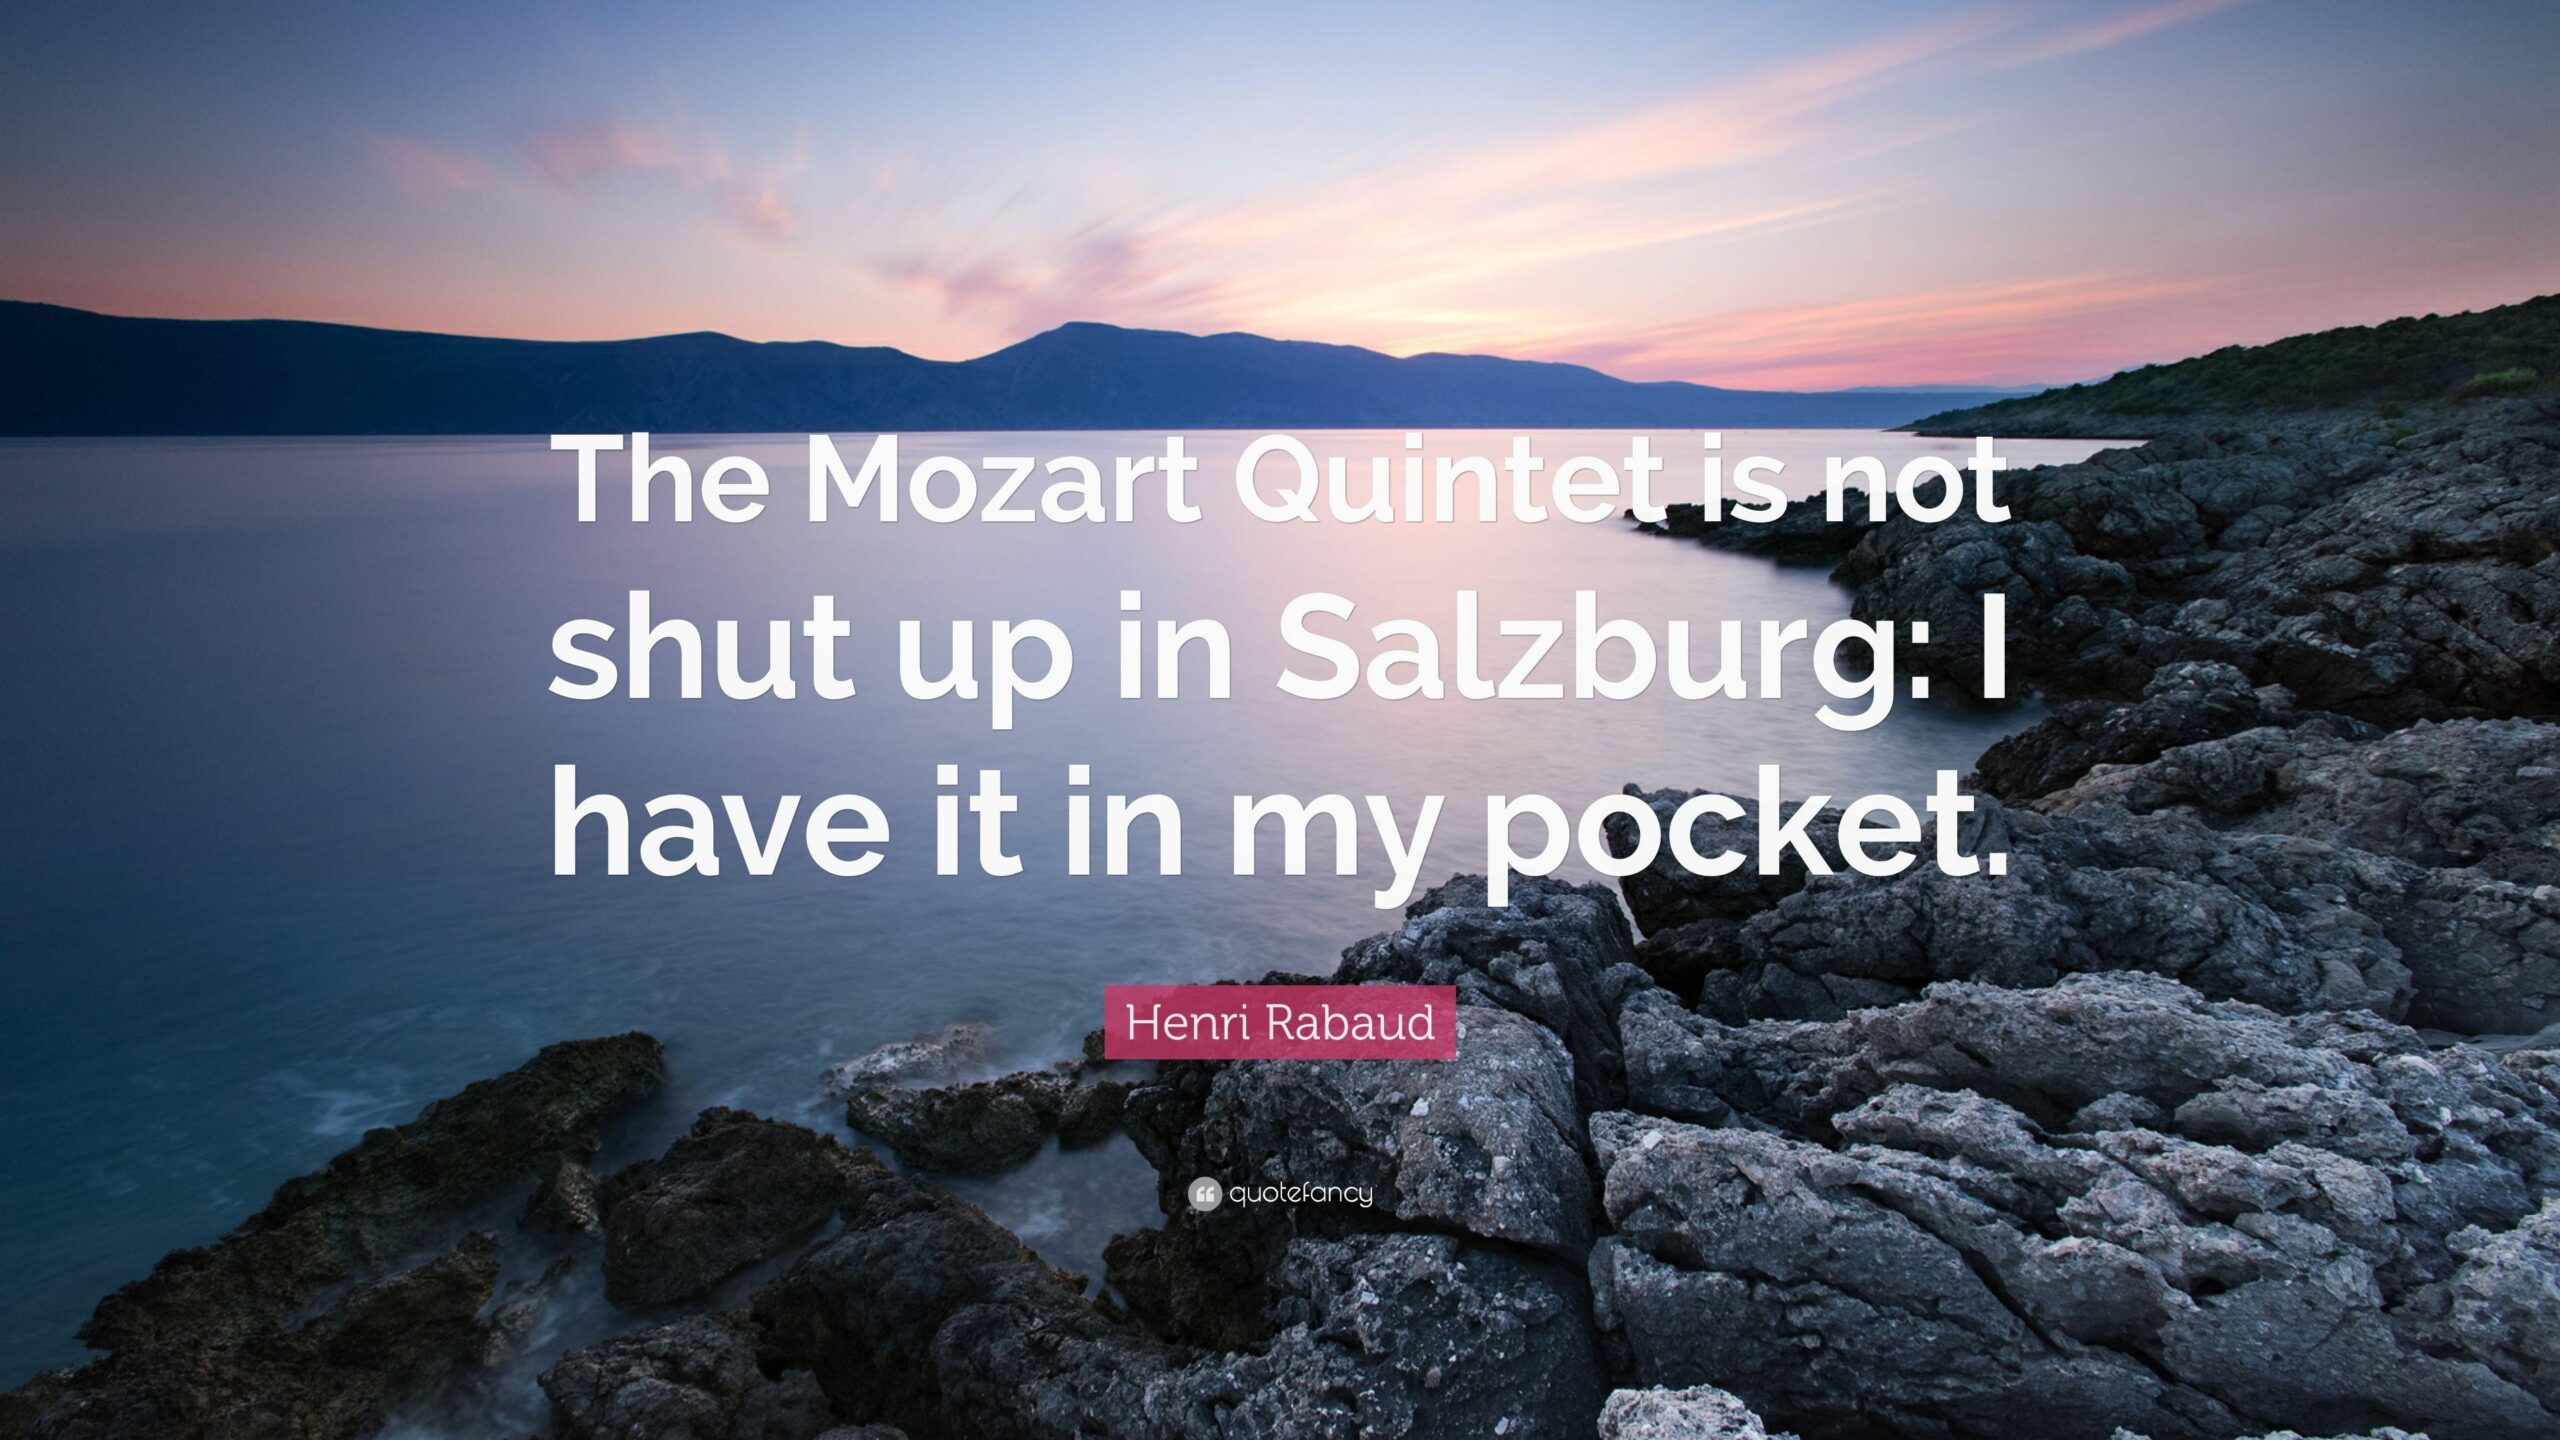 Henri Rabaud Quote “The Mozart Quintet is not shut up in Salzburg